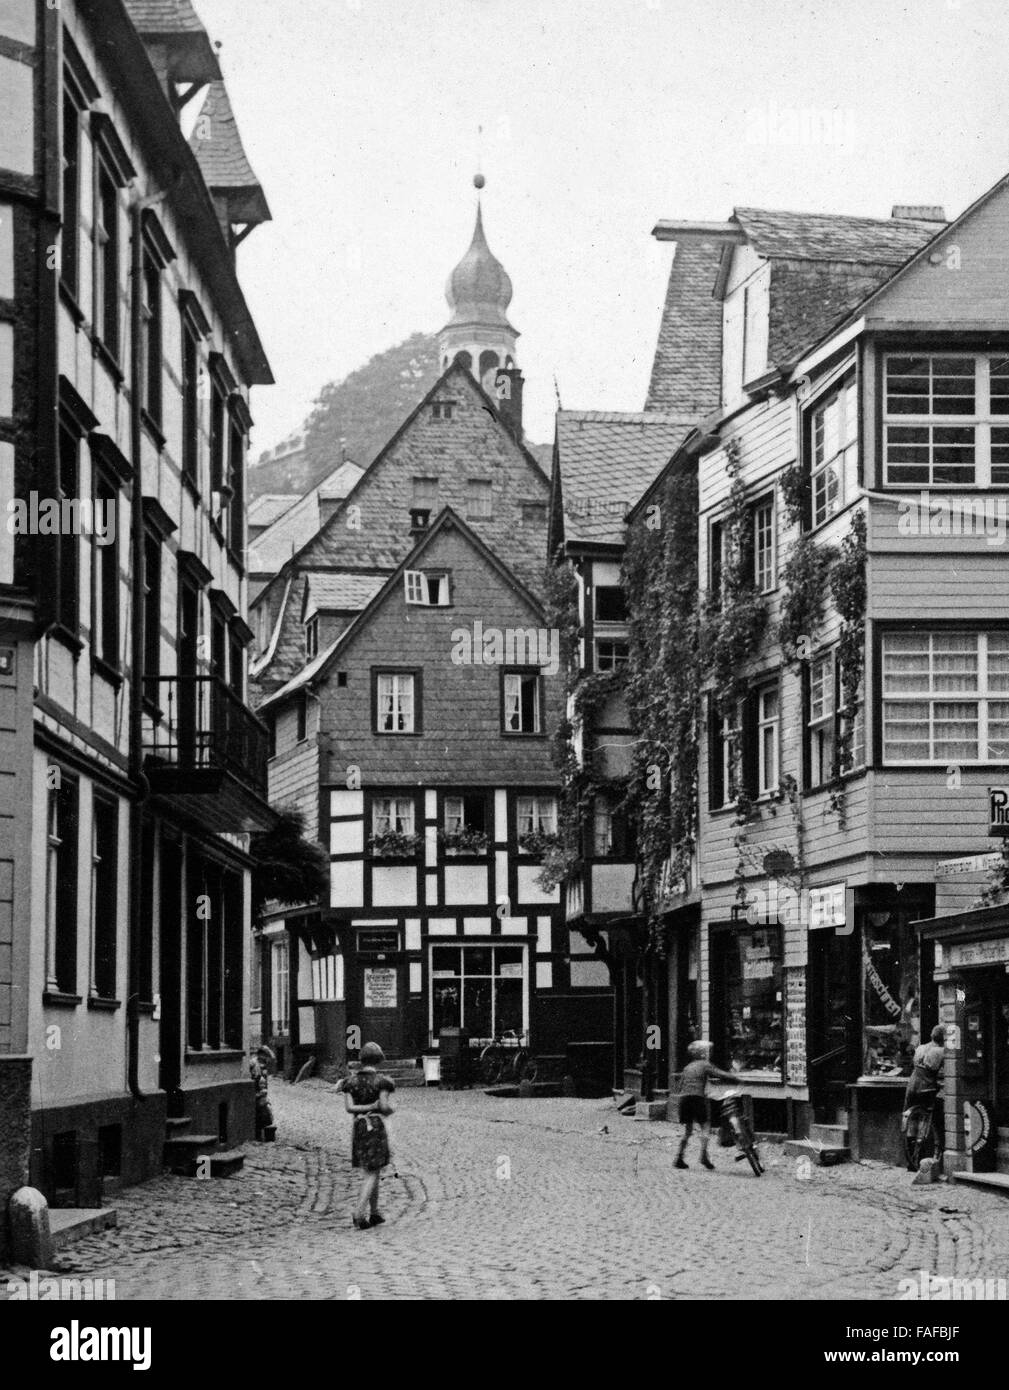 Blick in die Stadt Monschau eine der Rur in der Eifel, Deutschland, 1930er Jahre. Blick auf die Stadt Monschau am Fluss Rur in der Eifel-Region, Deutschland der 1930er Jahre. Stockfoto